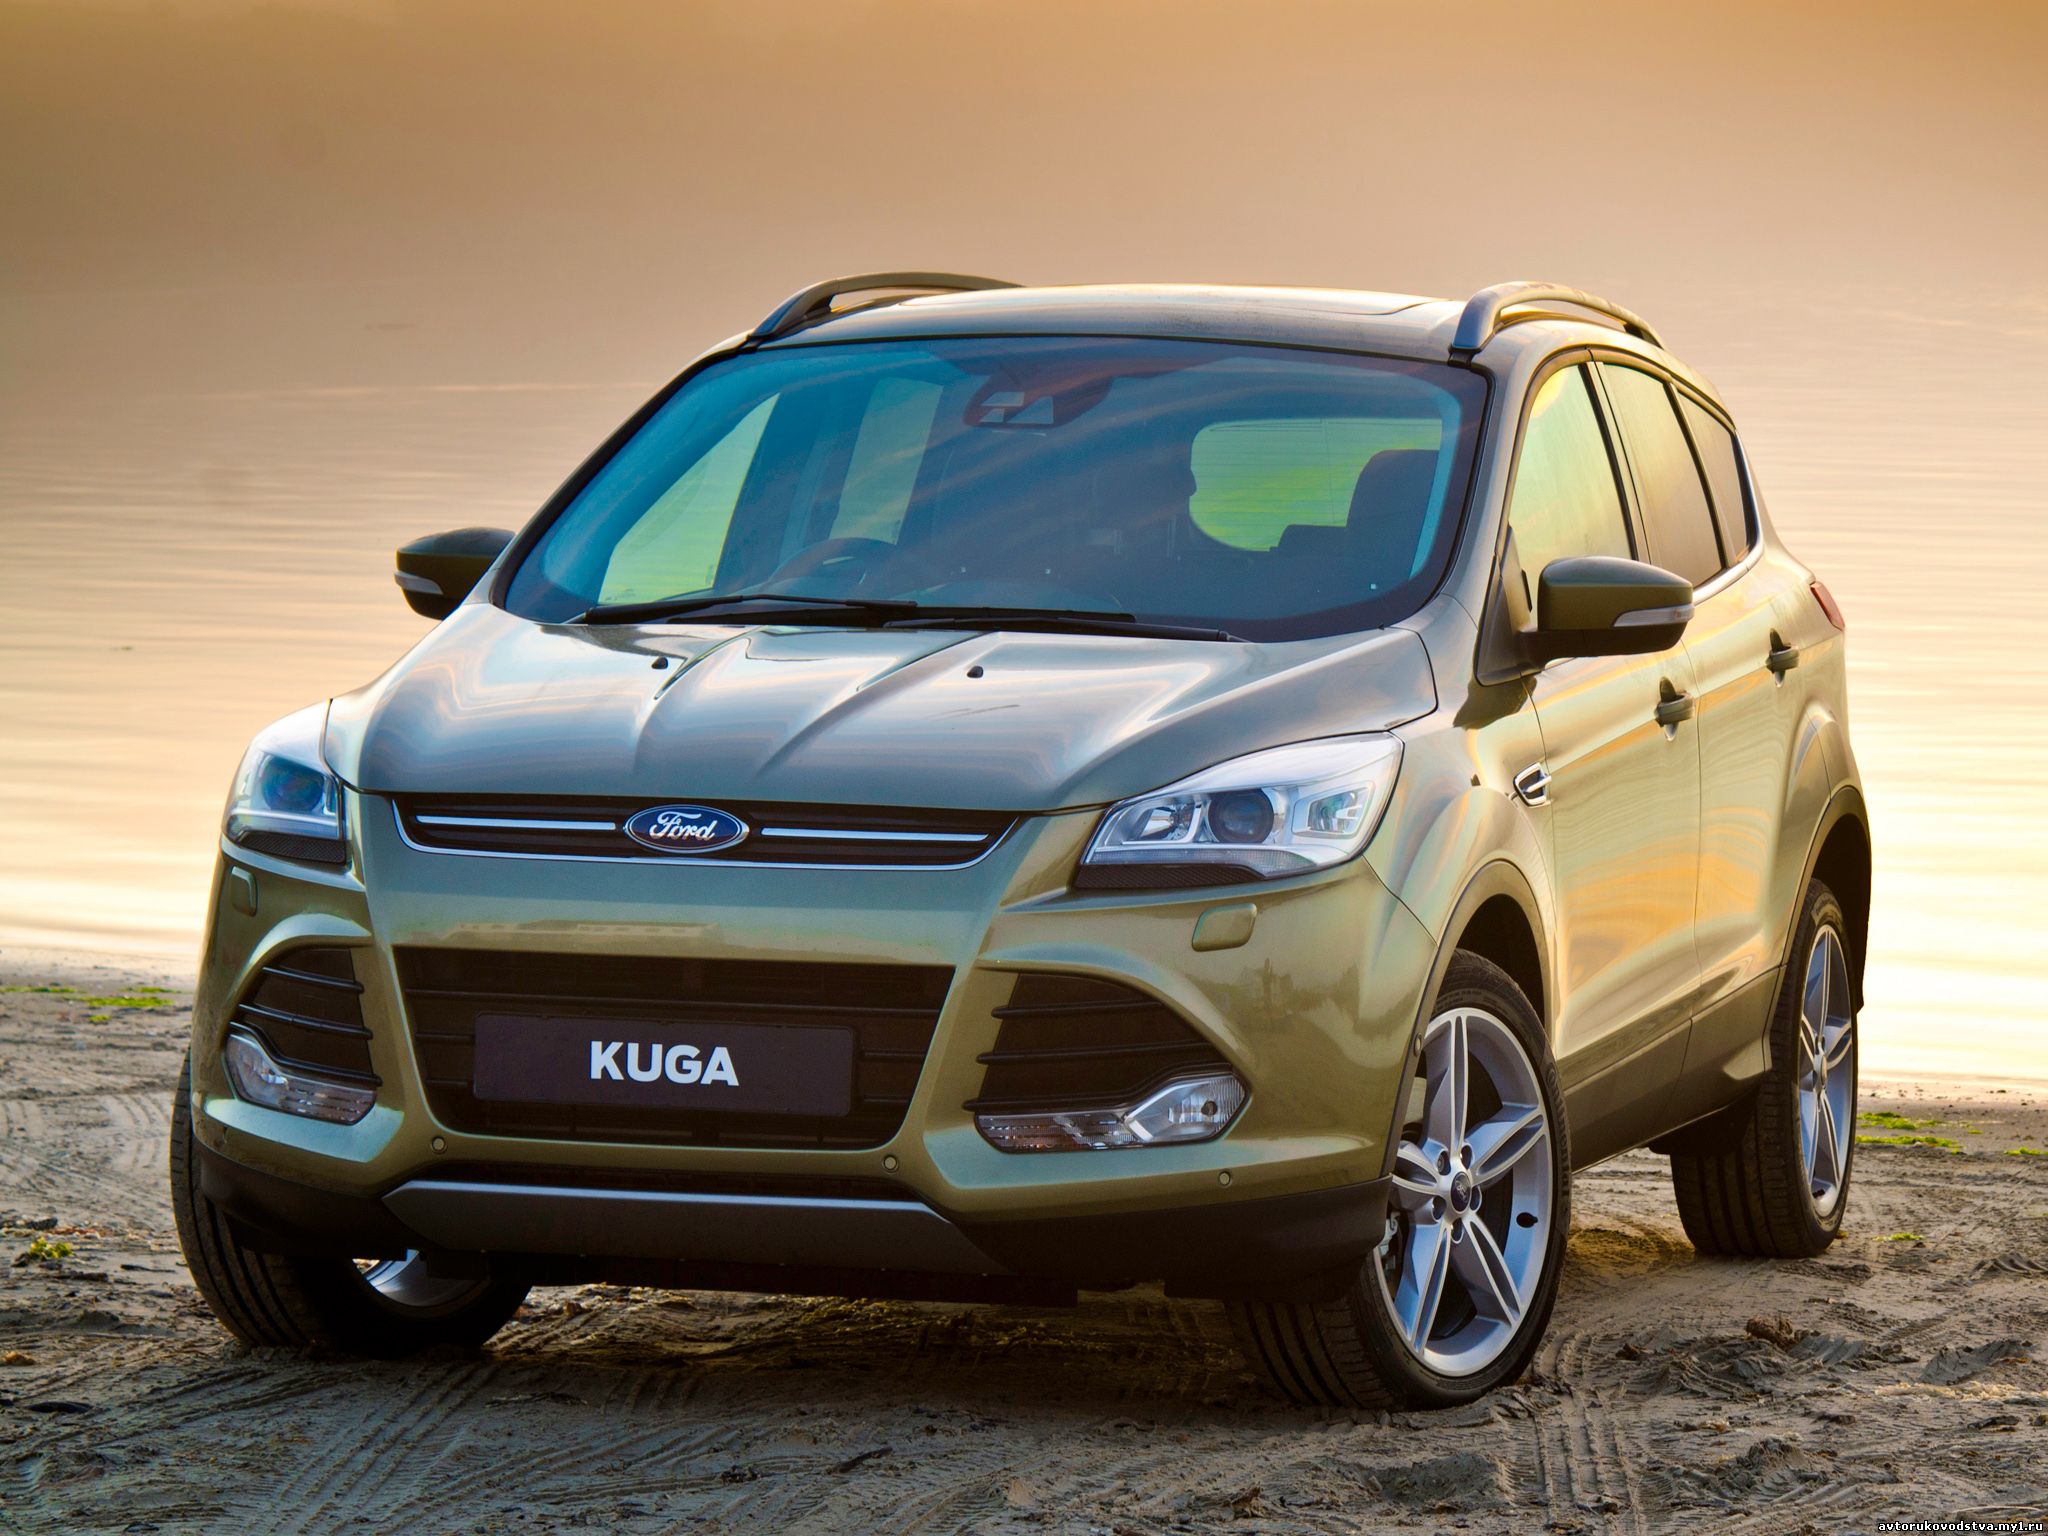 Руководство по ремонту и эксплуатации Ford Kuga (Форд Куга) 2013,2014